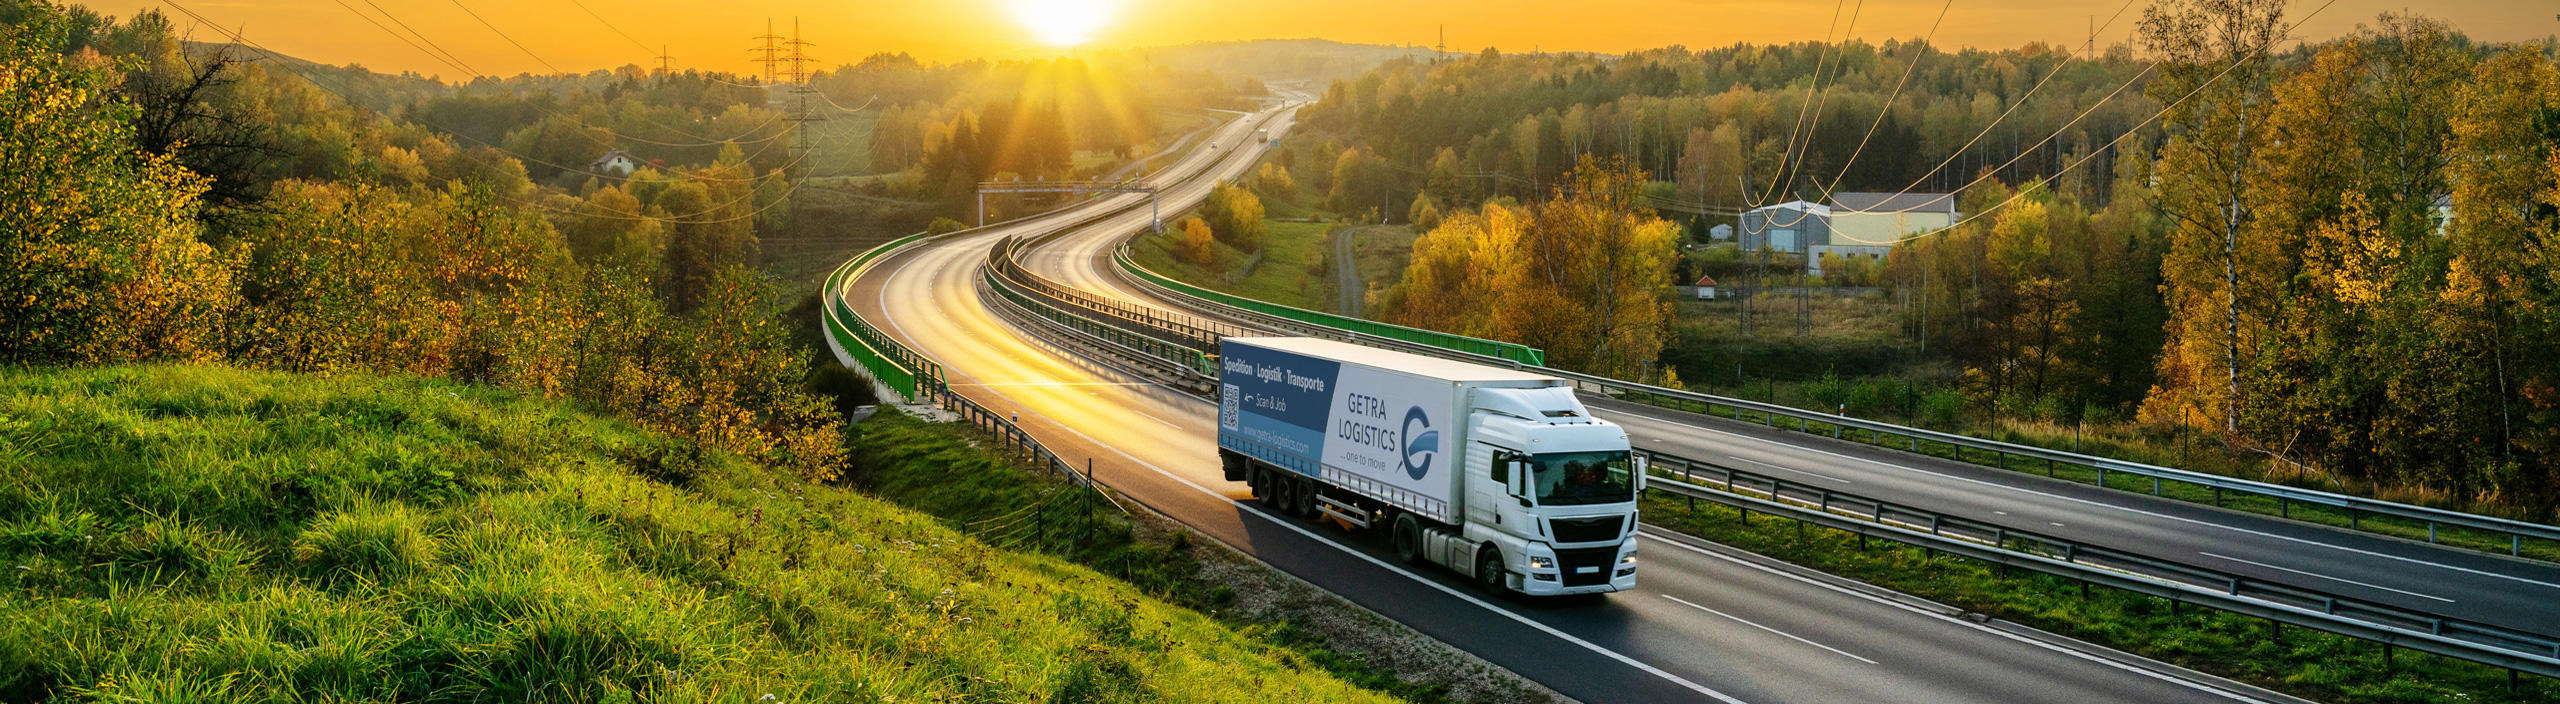 Bilder GETRA Logistics Austria GmbH & Co KG, Spedition-Logistik-Transporte